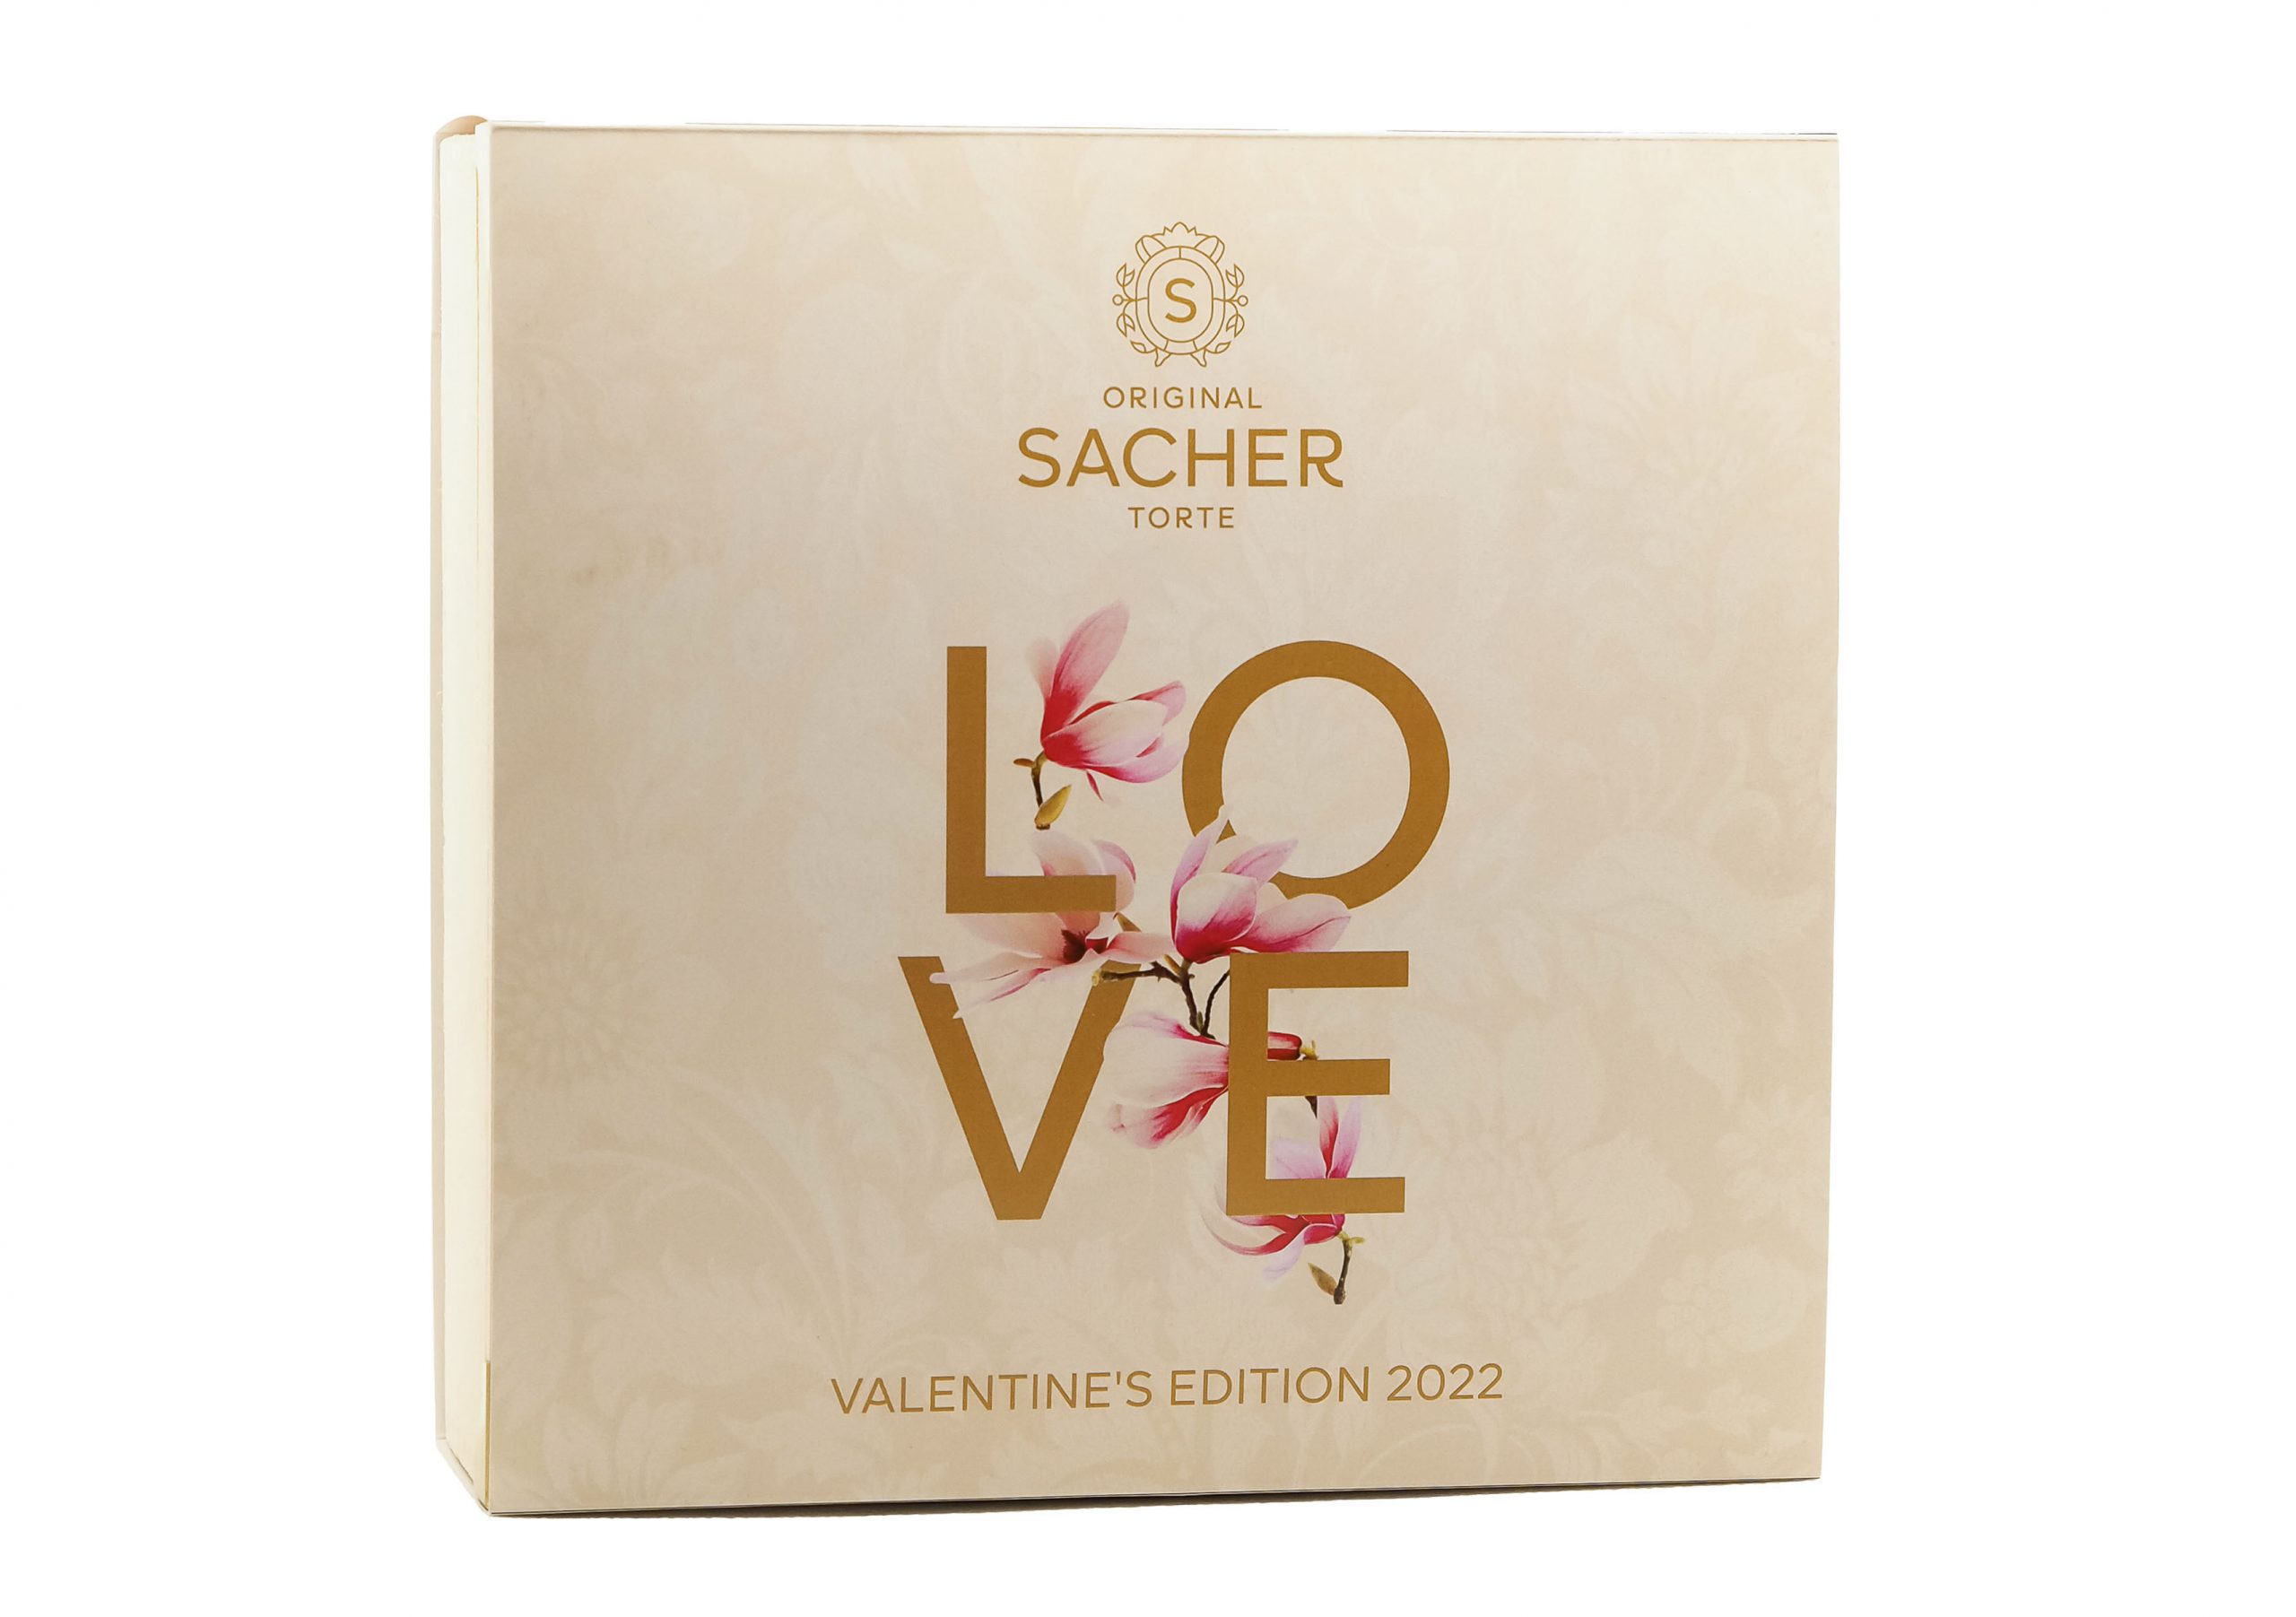 Die Original Sacher-Torte in der limitierten Valentine’s Edition ©Foto: Sacher/Katrin Atzlinger